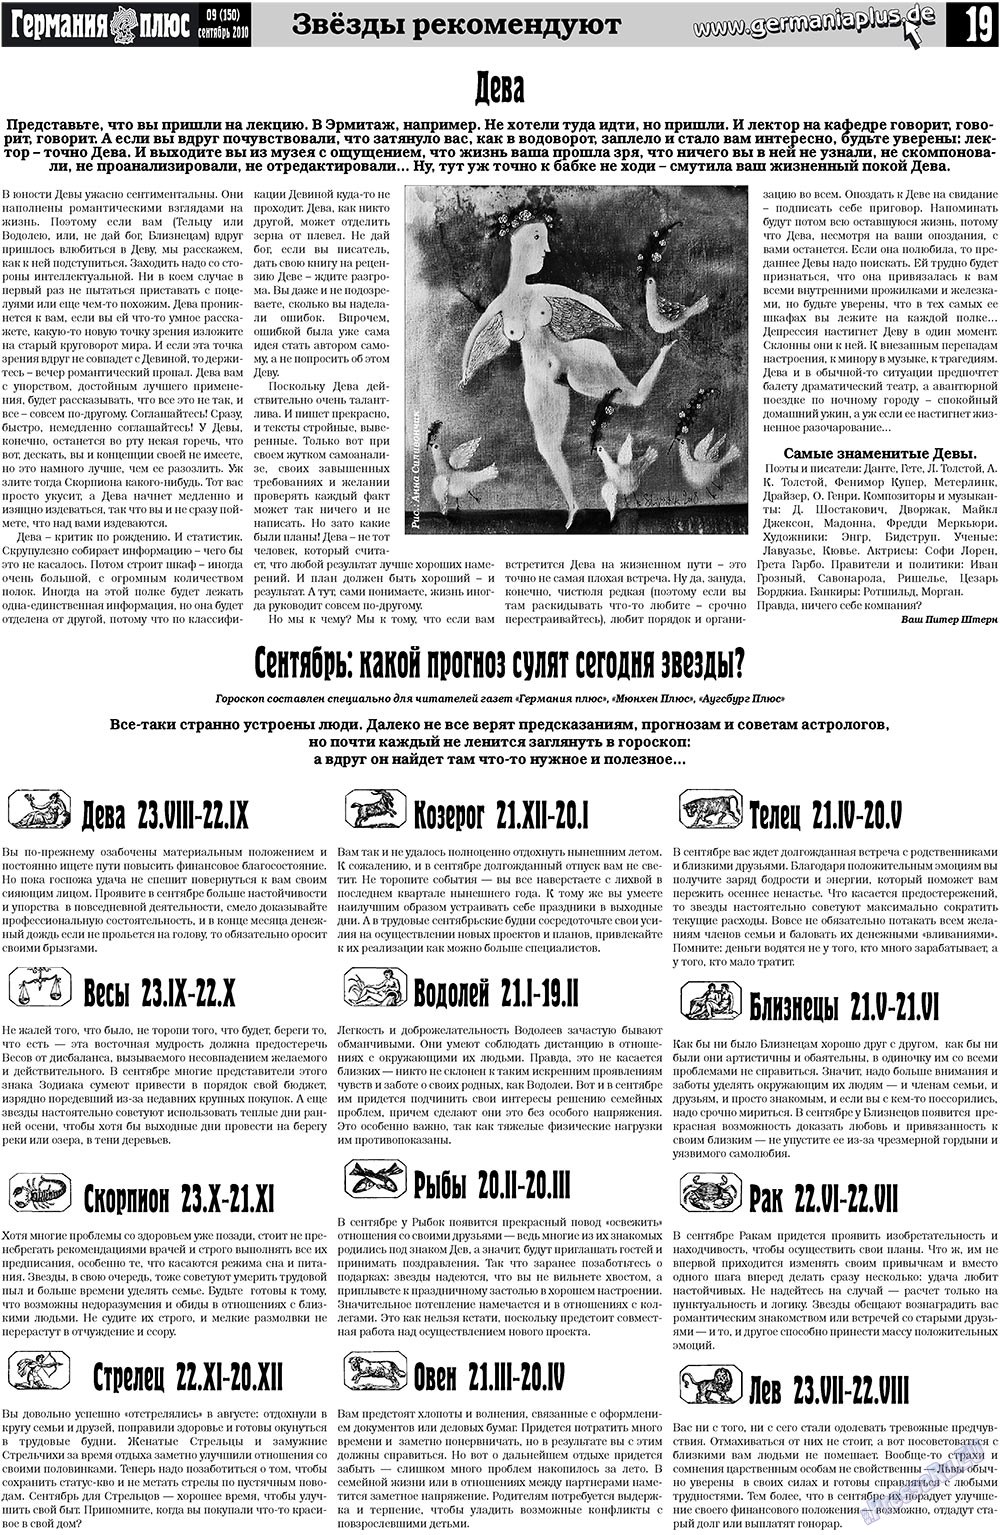 Германия плюс (газета). 2010 год, номер 9, стр. 19